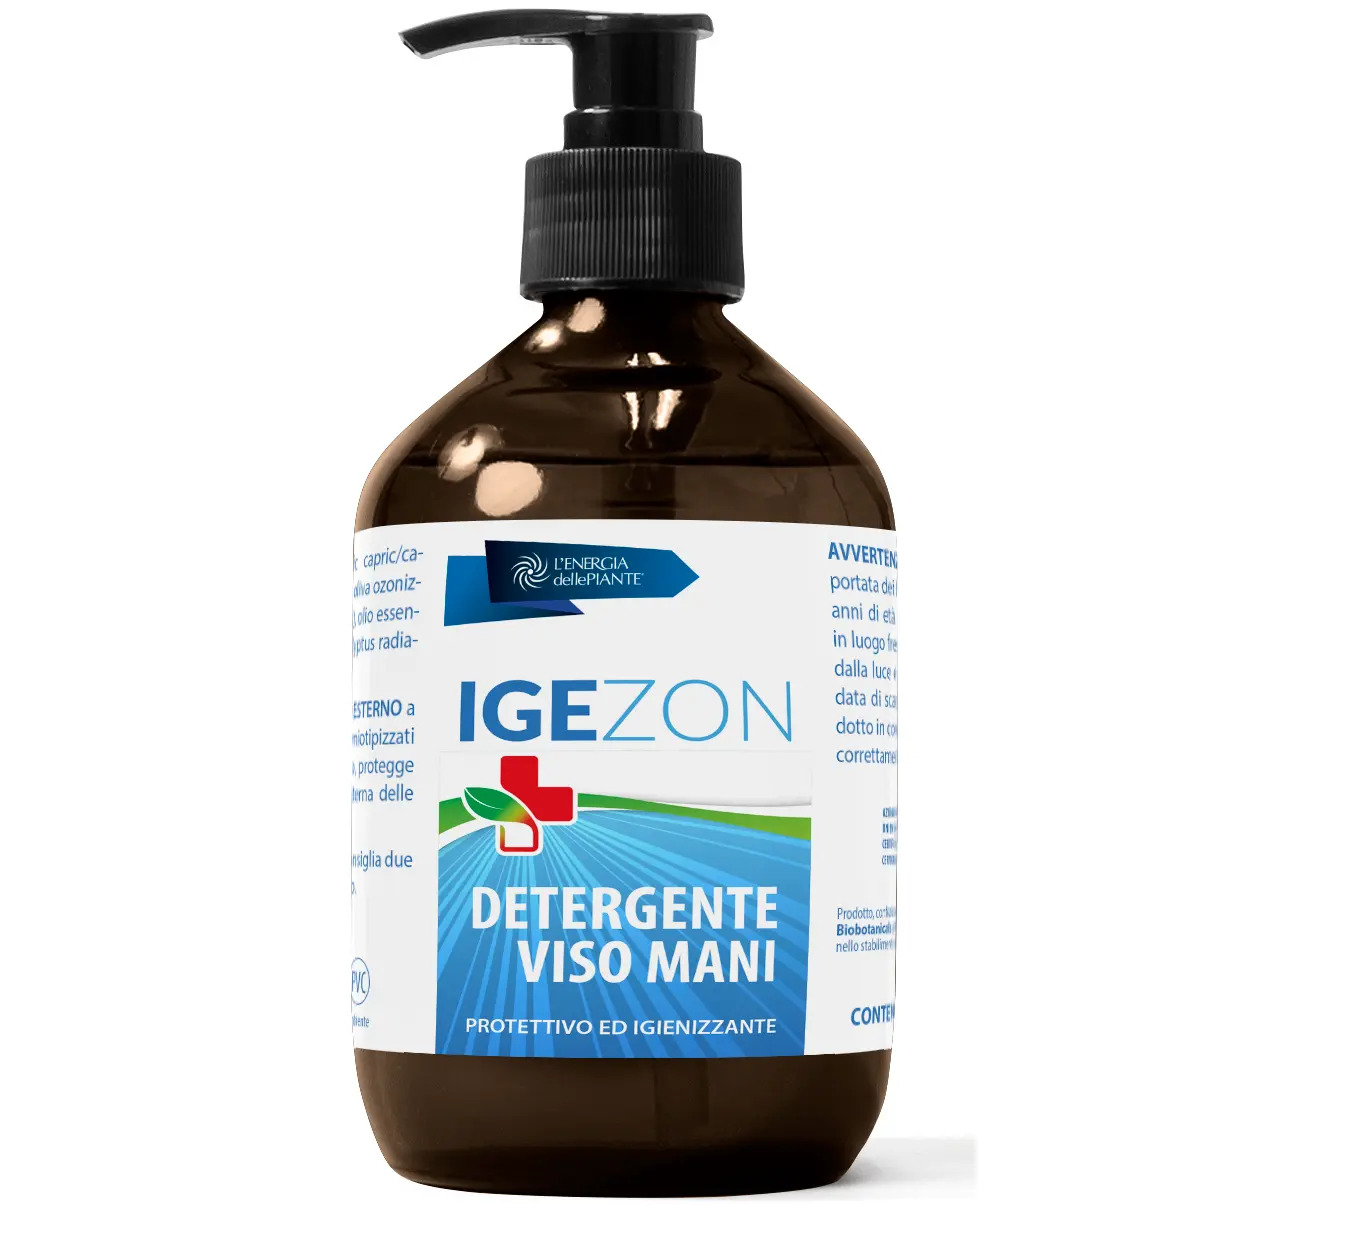 MADE IN ITALY migliore qualità Igezon Hand Gel Cream o-risciacquo antibatterico antisettico vendita calda pronta per la spedizione